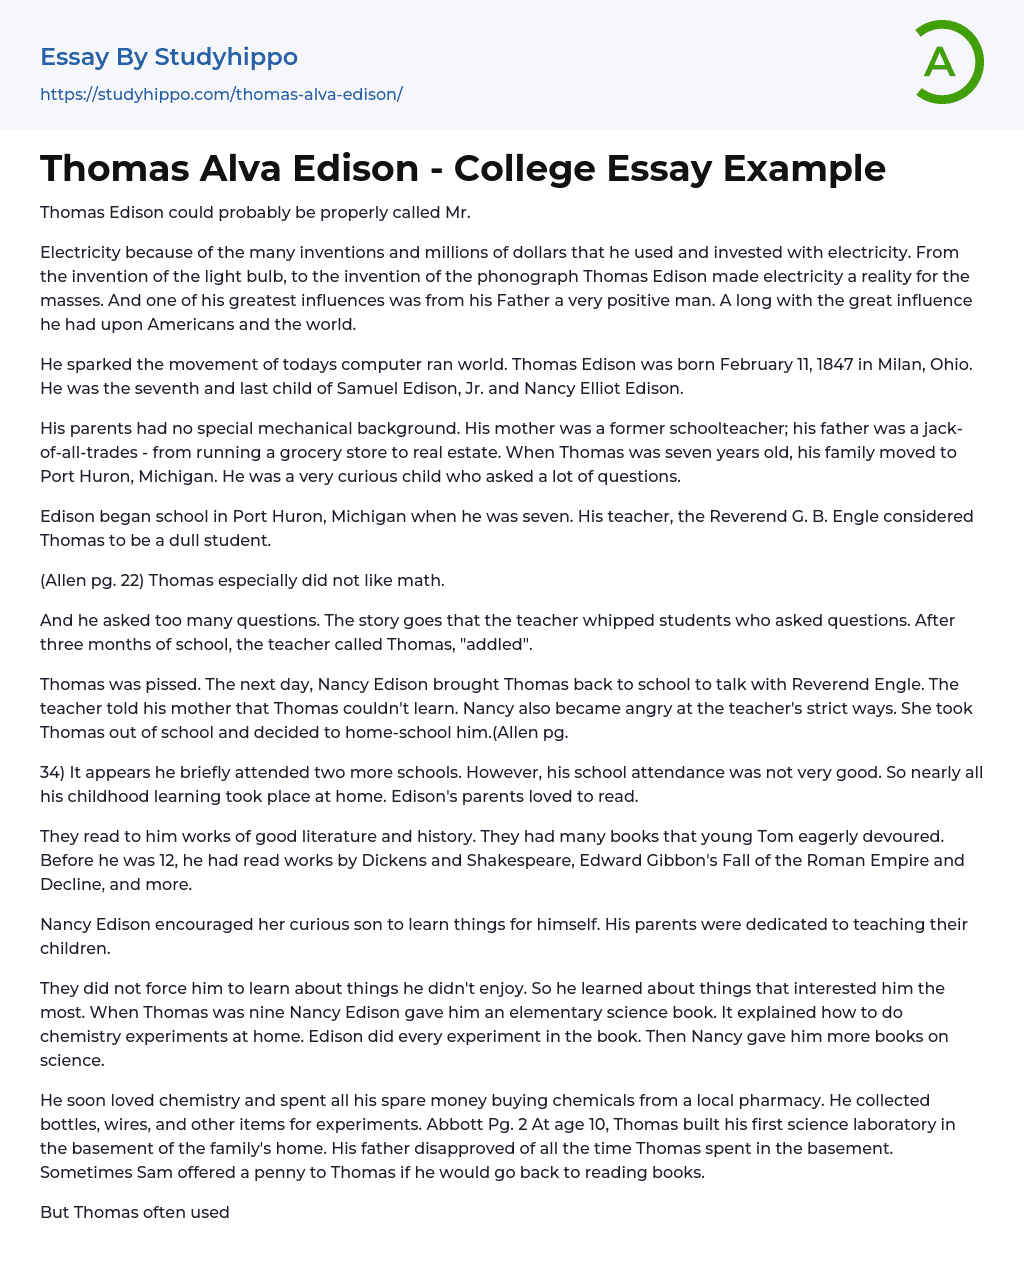 Thomas Alva Edison – College Essay Example